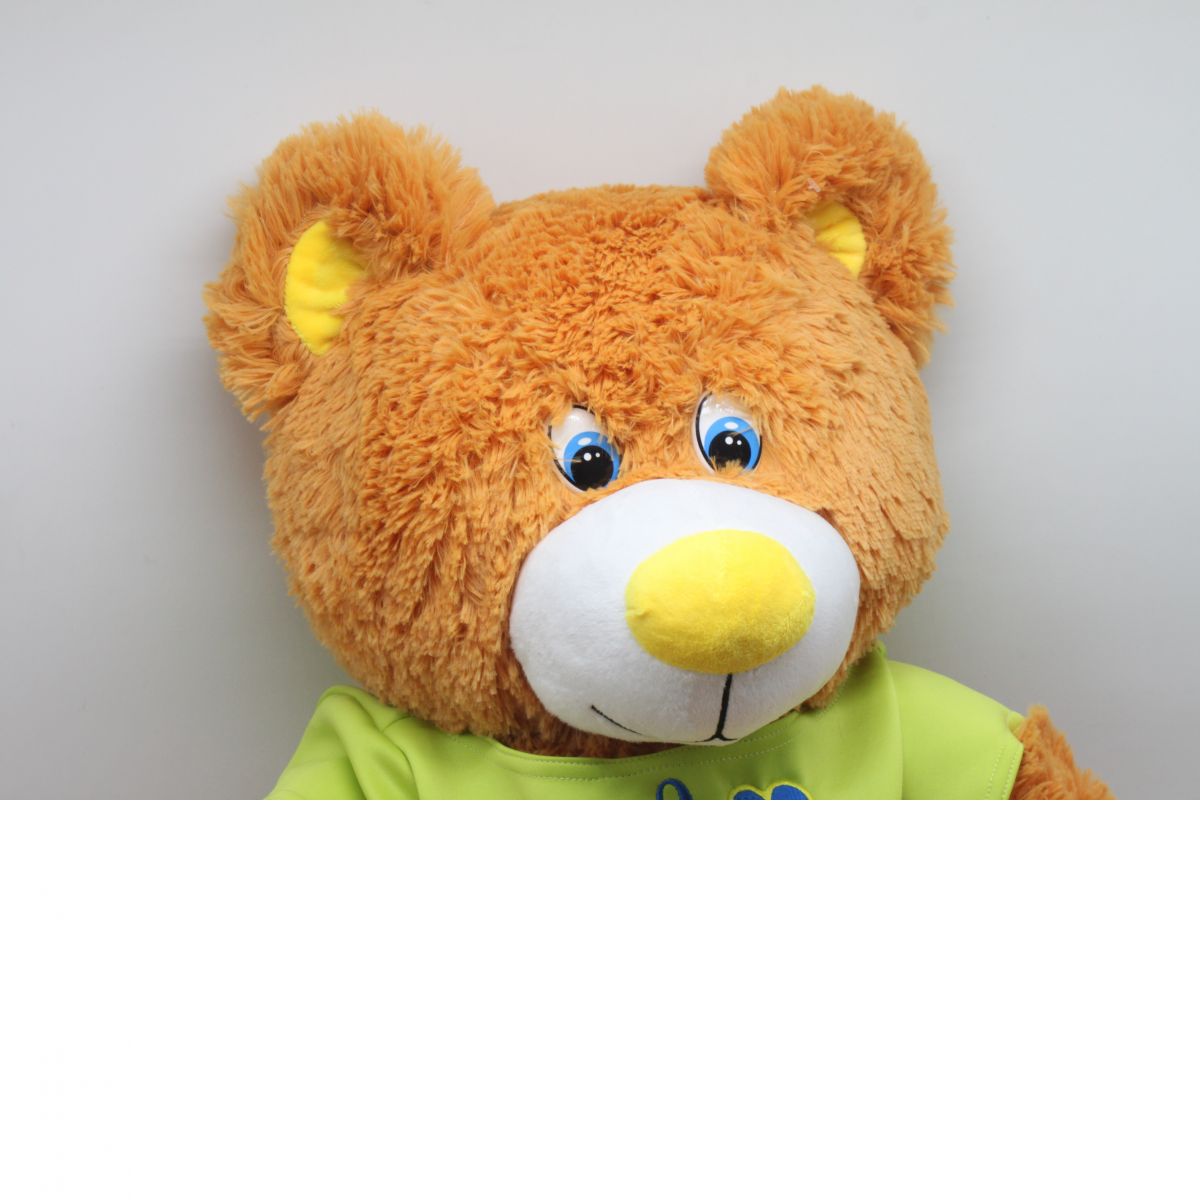 М'яка іграшка Ведмідь Барні висота 75 см (за стандартом 90 см) рудий